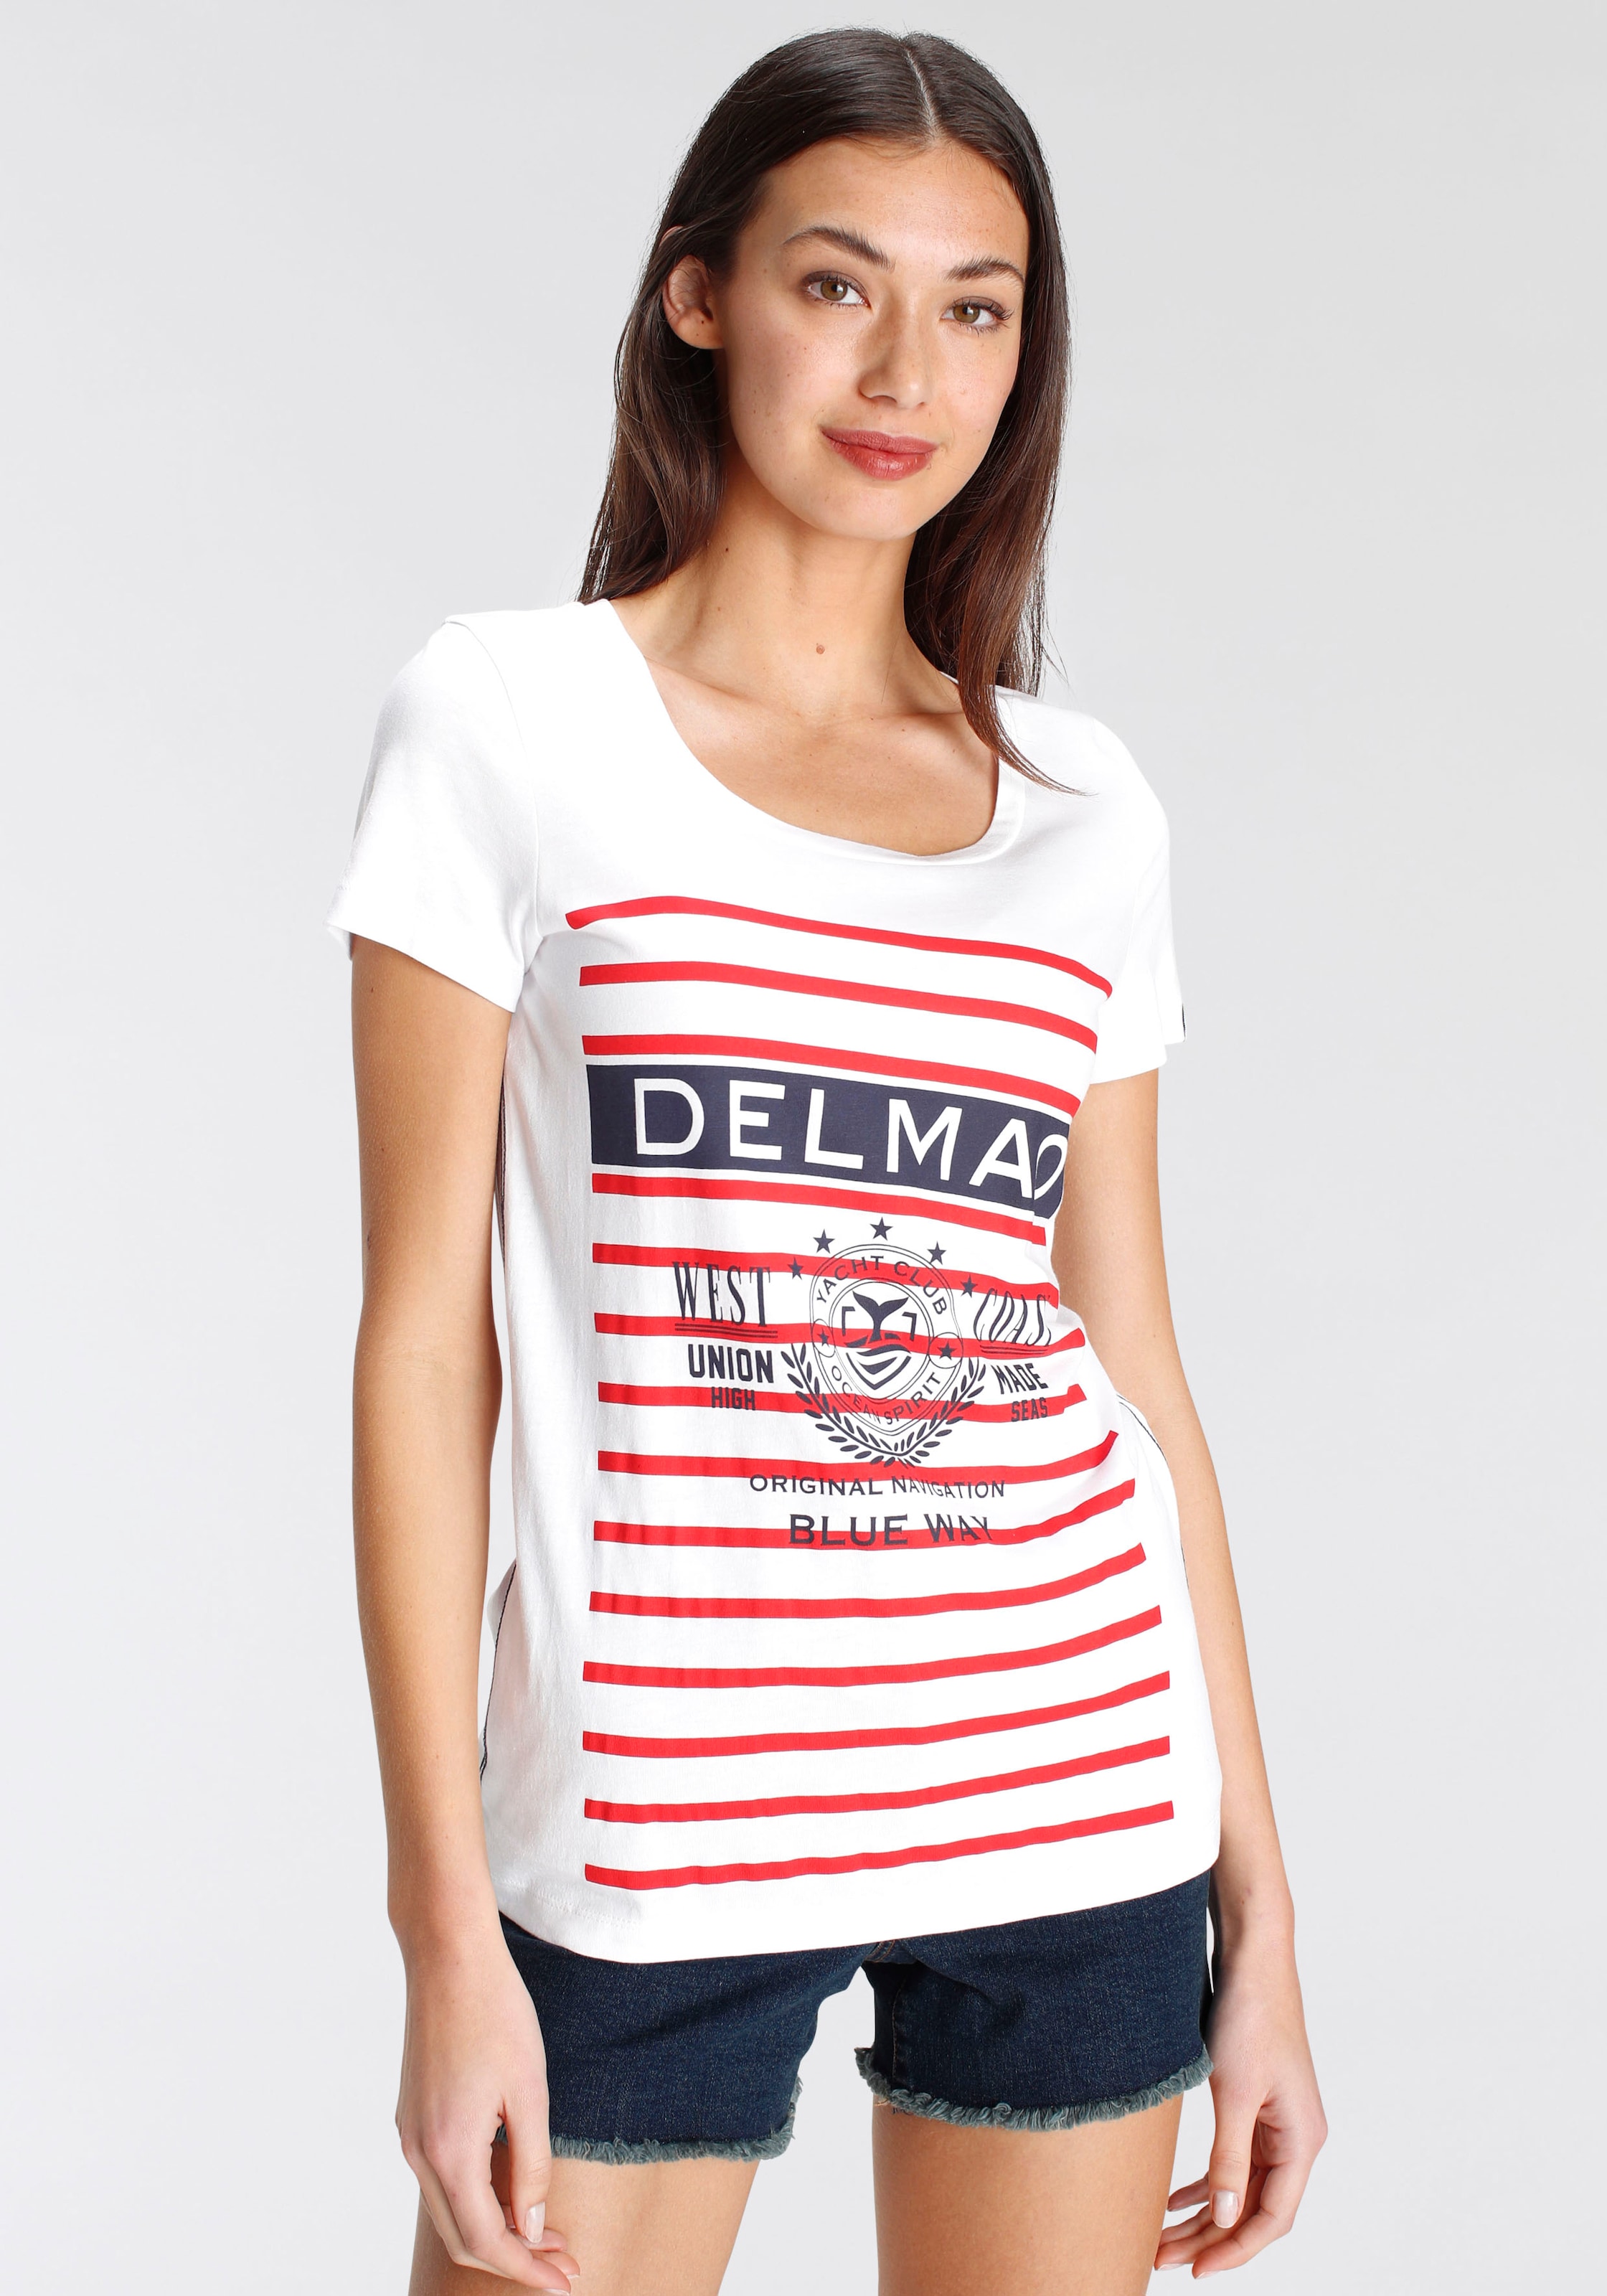 DELMAO Print-Shirt, mit sportivem grossen online Jelmoli-Versand Schweiz MARKE! bei shoppen - NEUE Marken-Logodruck